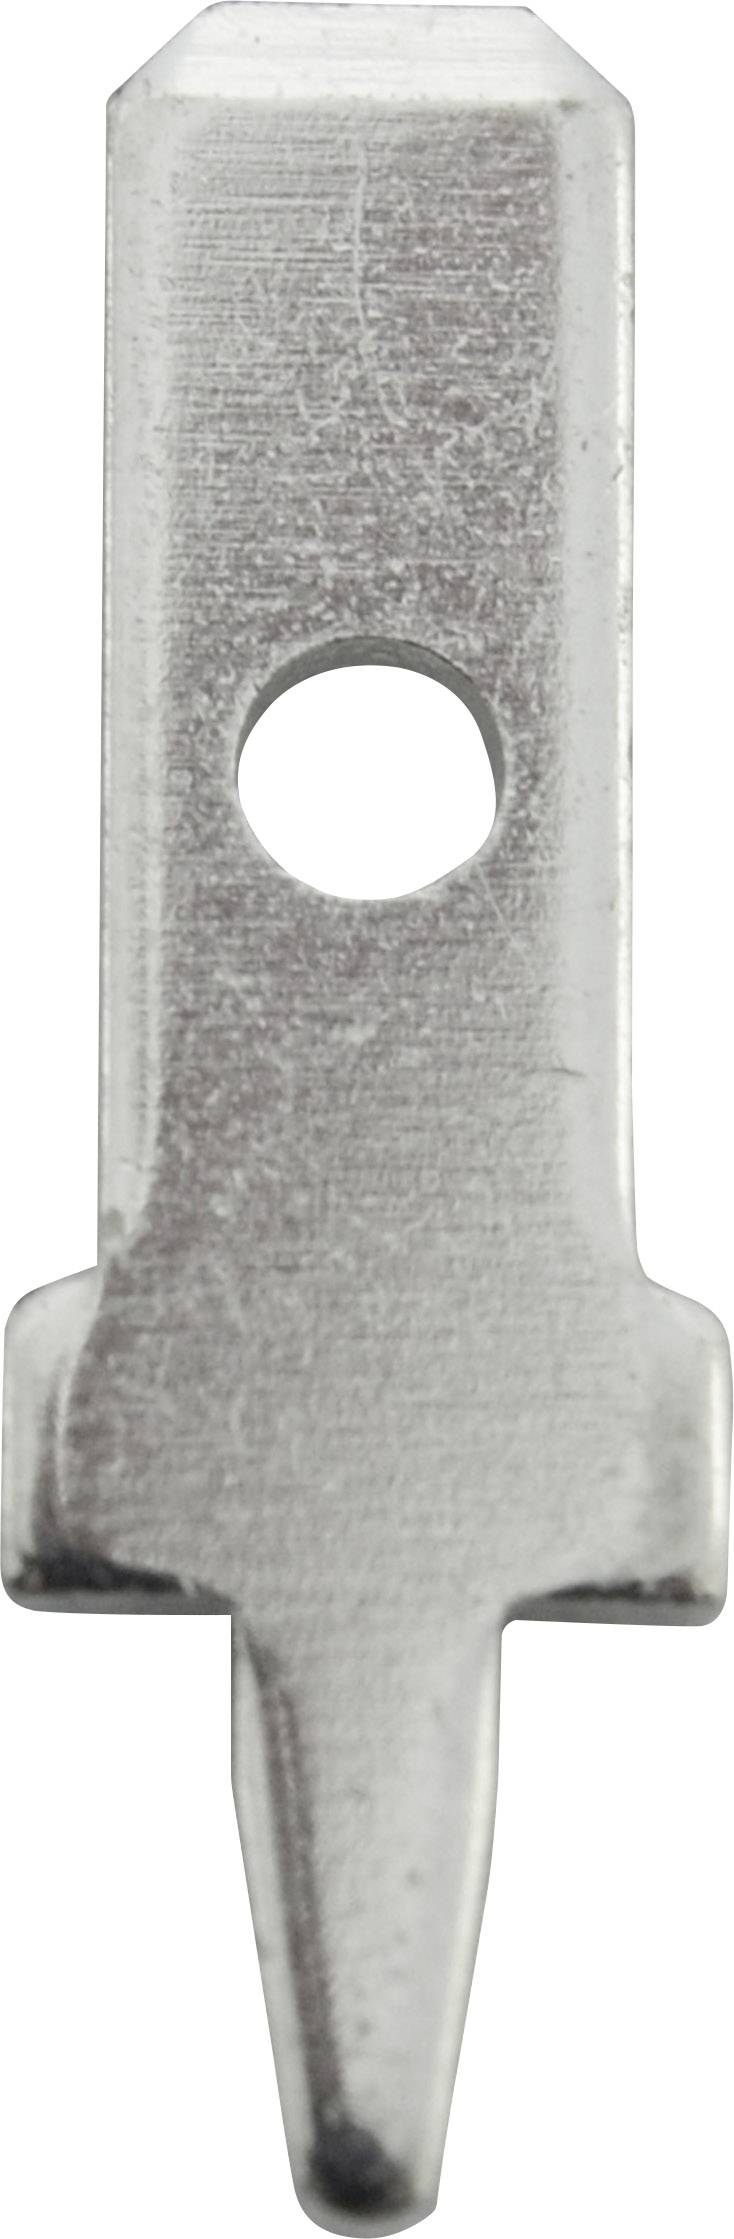 VOGT Steckzunge Steckbreite: 2.8 mm Steckdicke: 0.5 mm 180 ° Unisoliert Metall Vogt Verbindungstechn